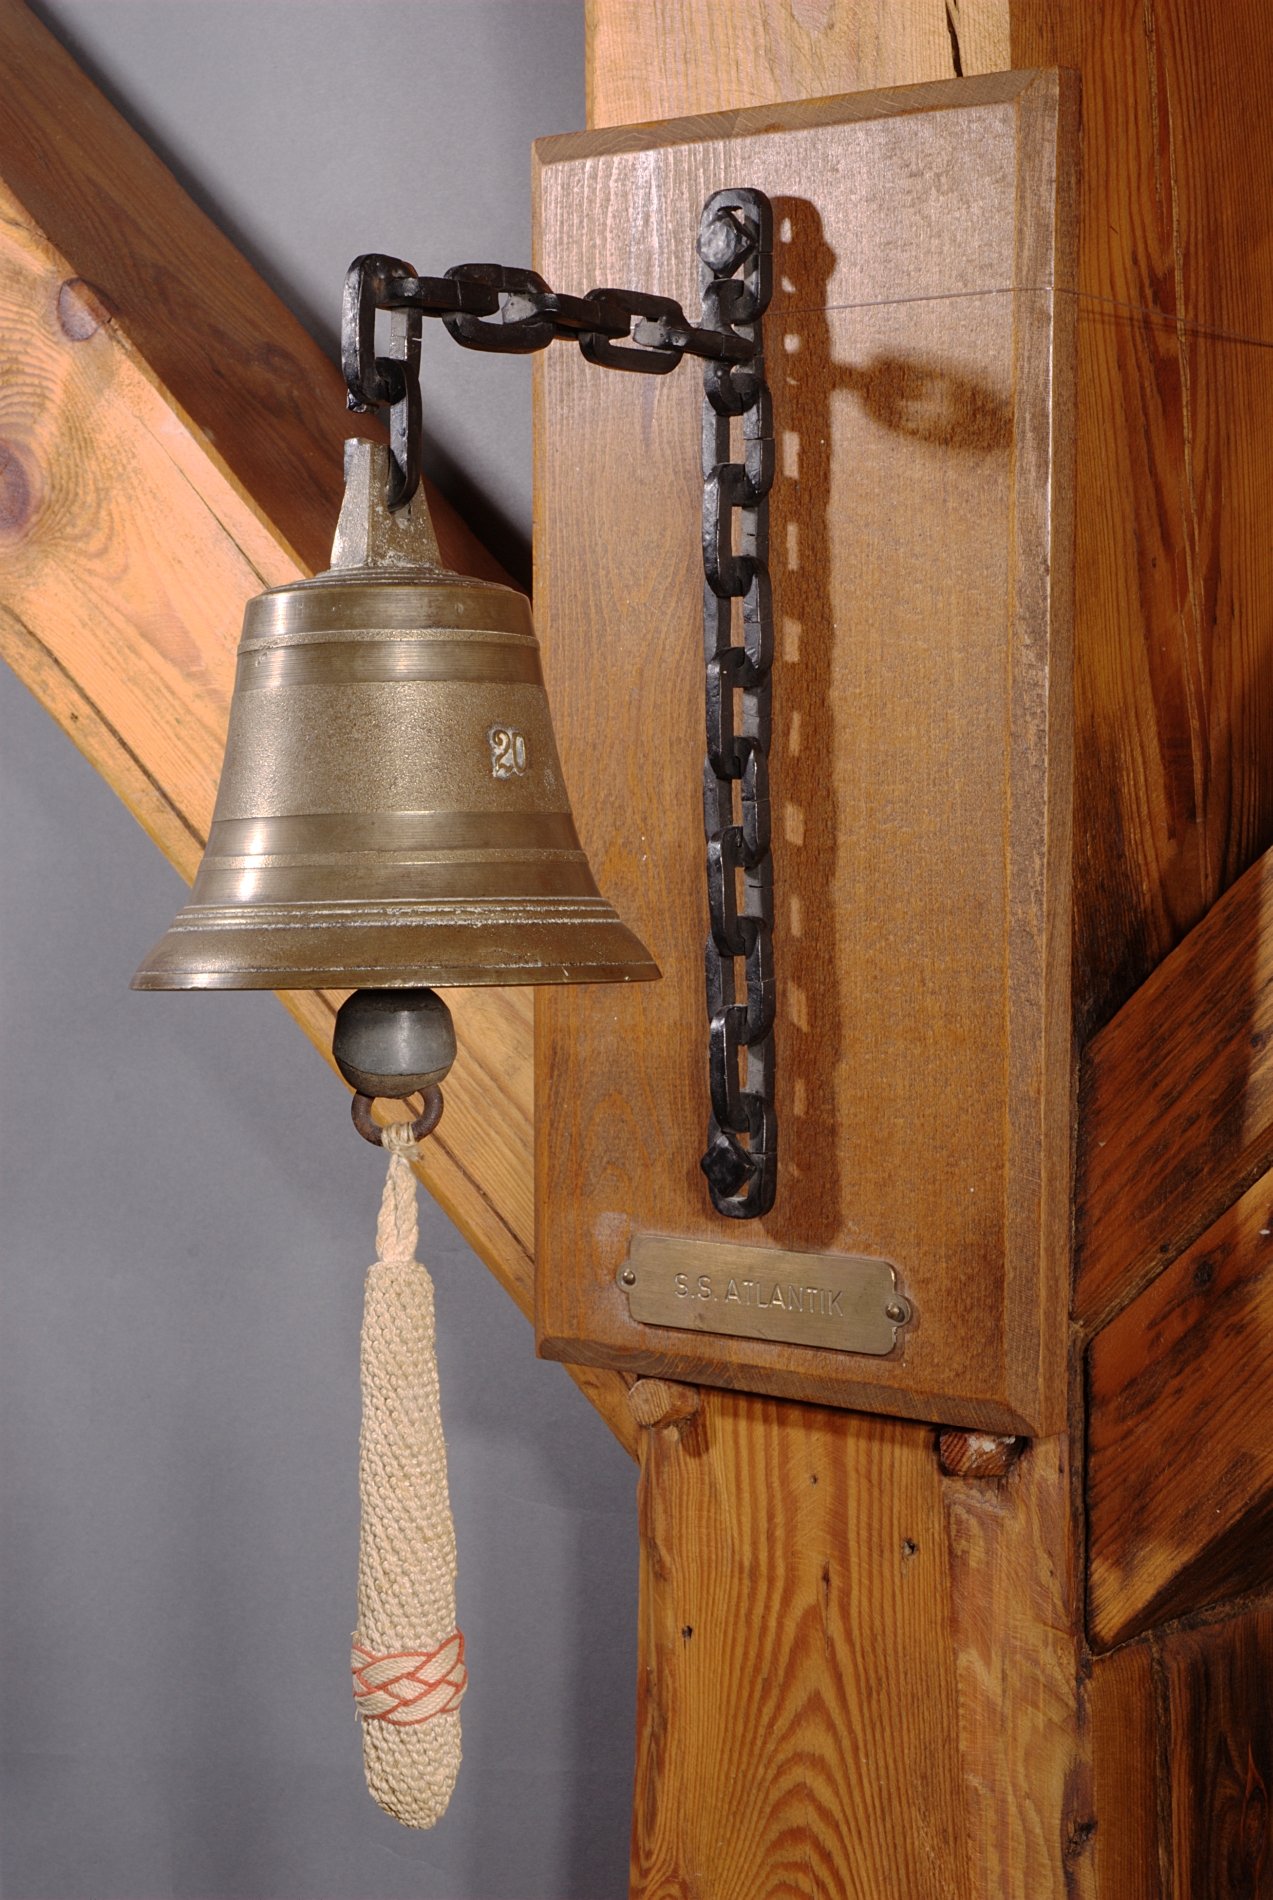 Glocke "S.S.Atlantik" - ehemalige Glocke eines Bolle Milchwagens (Stiftung Domäne Dahlem - Landgut und Museum, Weiternutzung nur mit Genehmigung des Museums CC BY-NC-SA)